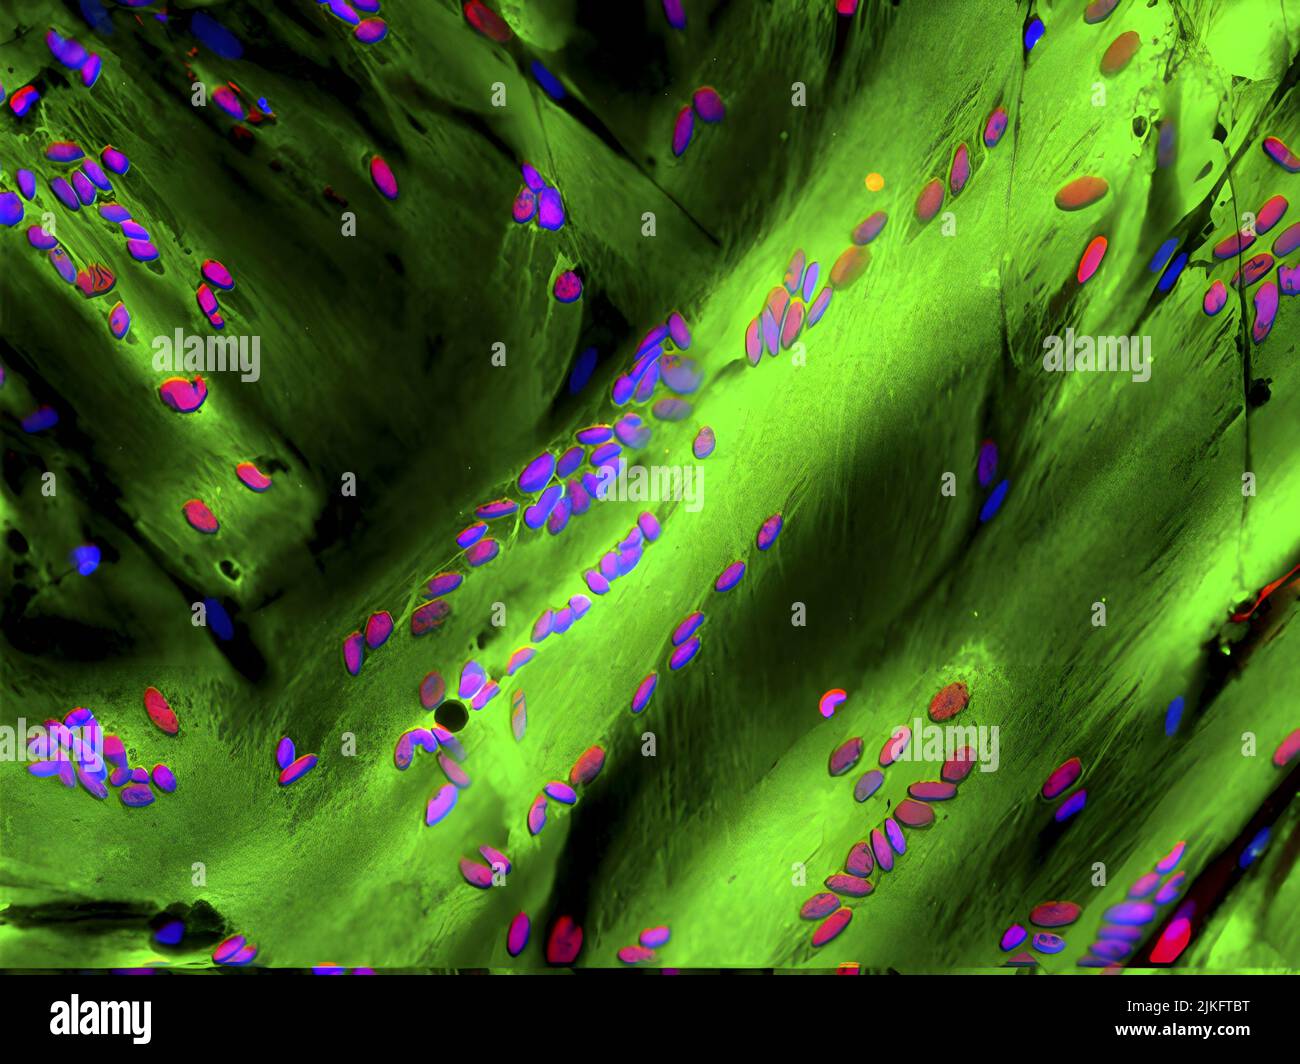 Forscher haben herausgefunden, dass der TFIID-Proteinkomplex die Stammzellgene kontrolliert, die Skelettmuskeln reparieren. Dieses Bild zeigt differenzierte menschliche Skelettmuskelfasern (Myotubes, grün), die das MyoD-Protein (rot gefärbt) schützen, das in Zusammenarbeit mit TFIID Muskelstammzellen in Muskelgewebe transformiert. Zellkerne sind blau gefärbt. Diese Entdeckung könnte helfen, Strategien zu entwickeln, die Stammzellen aktivieren, um durch Alterung oder Krankheiten wie Muskeldystrophie und Krebs degenerierte Muskeln zu reparieren. Stockfoto